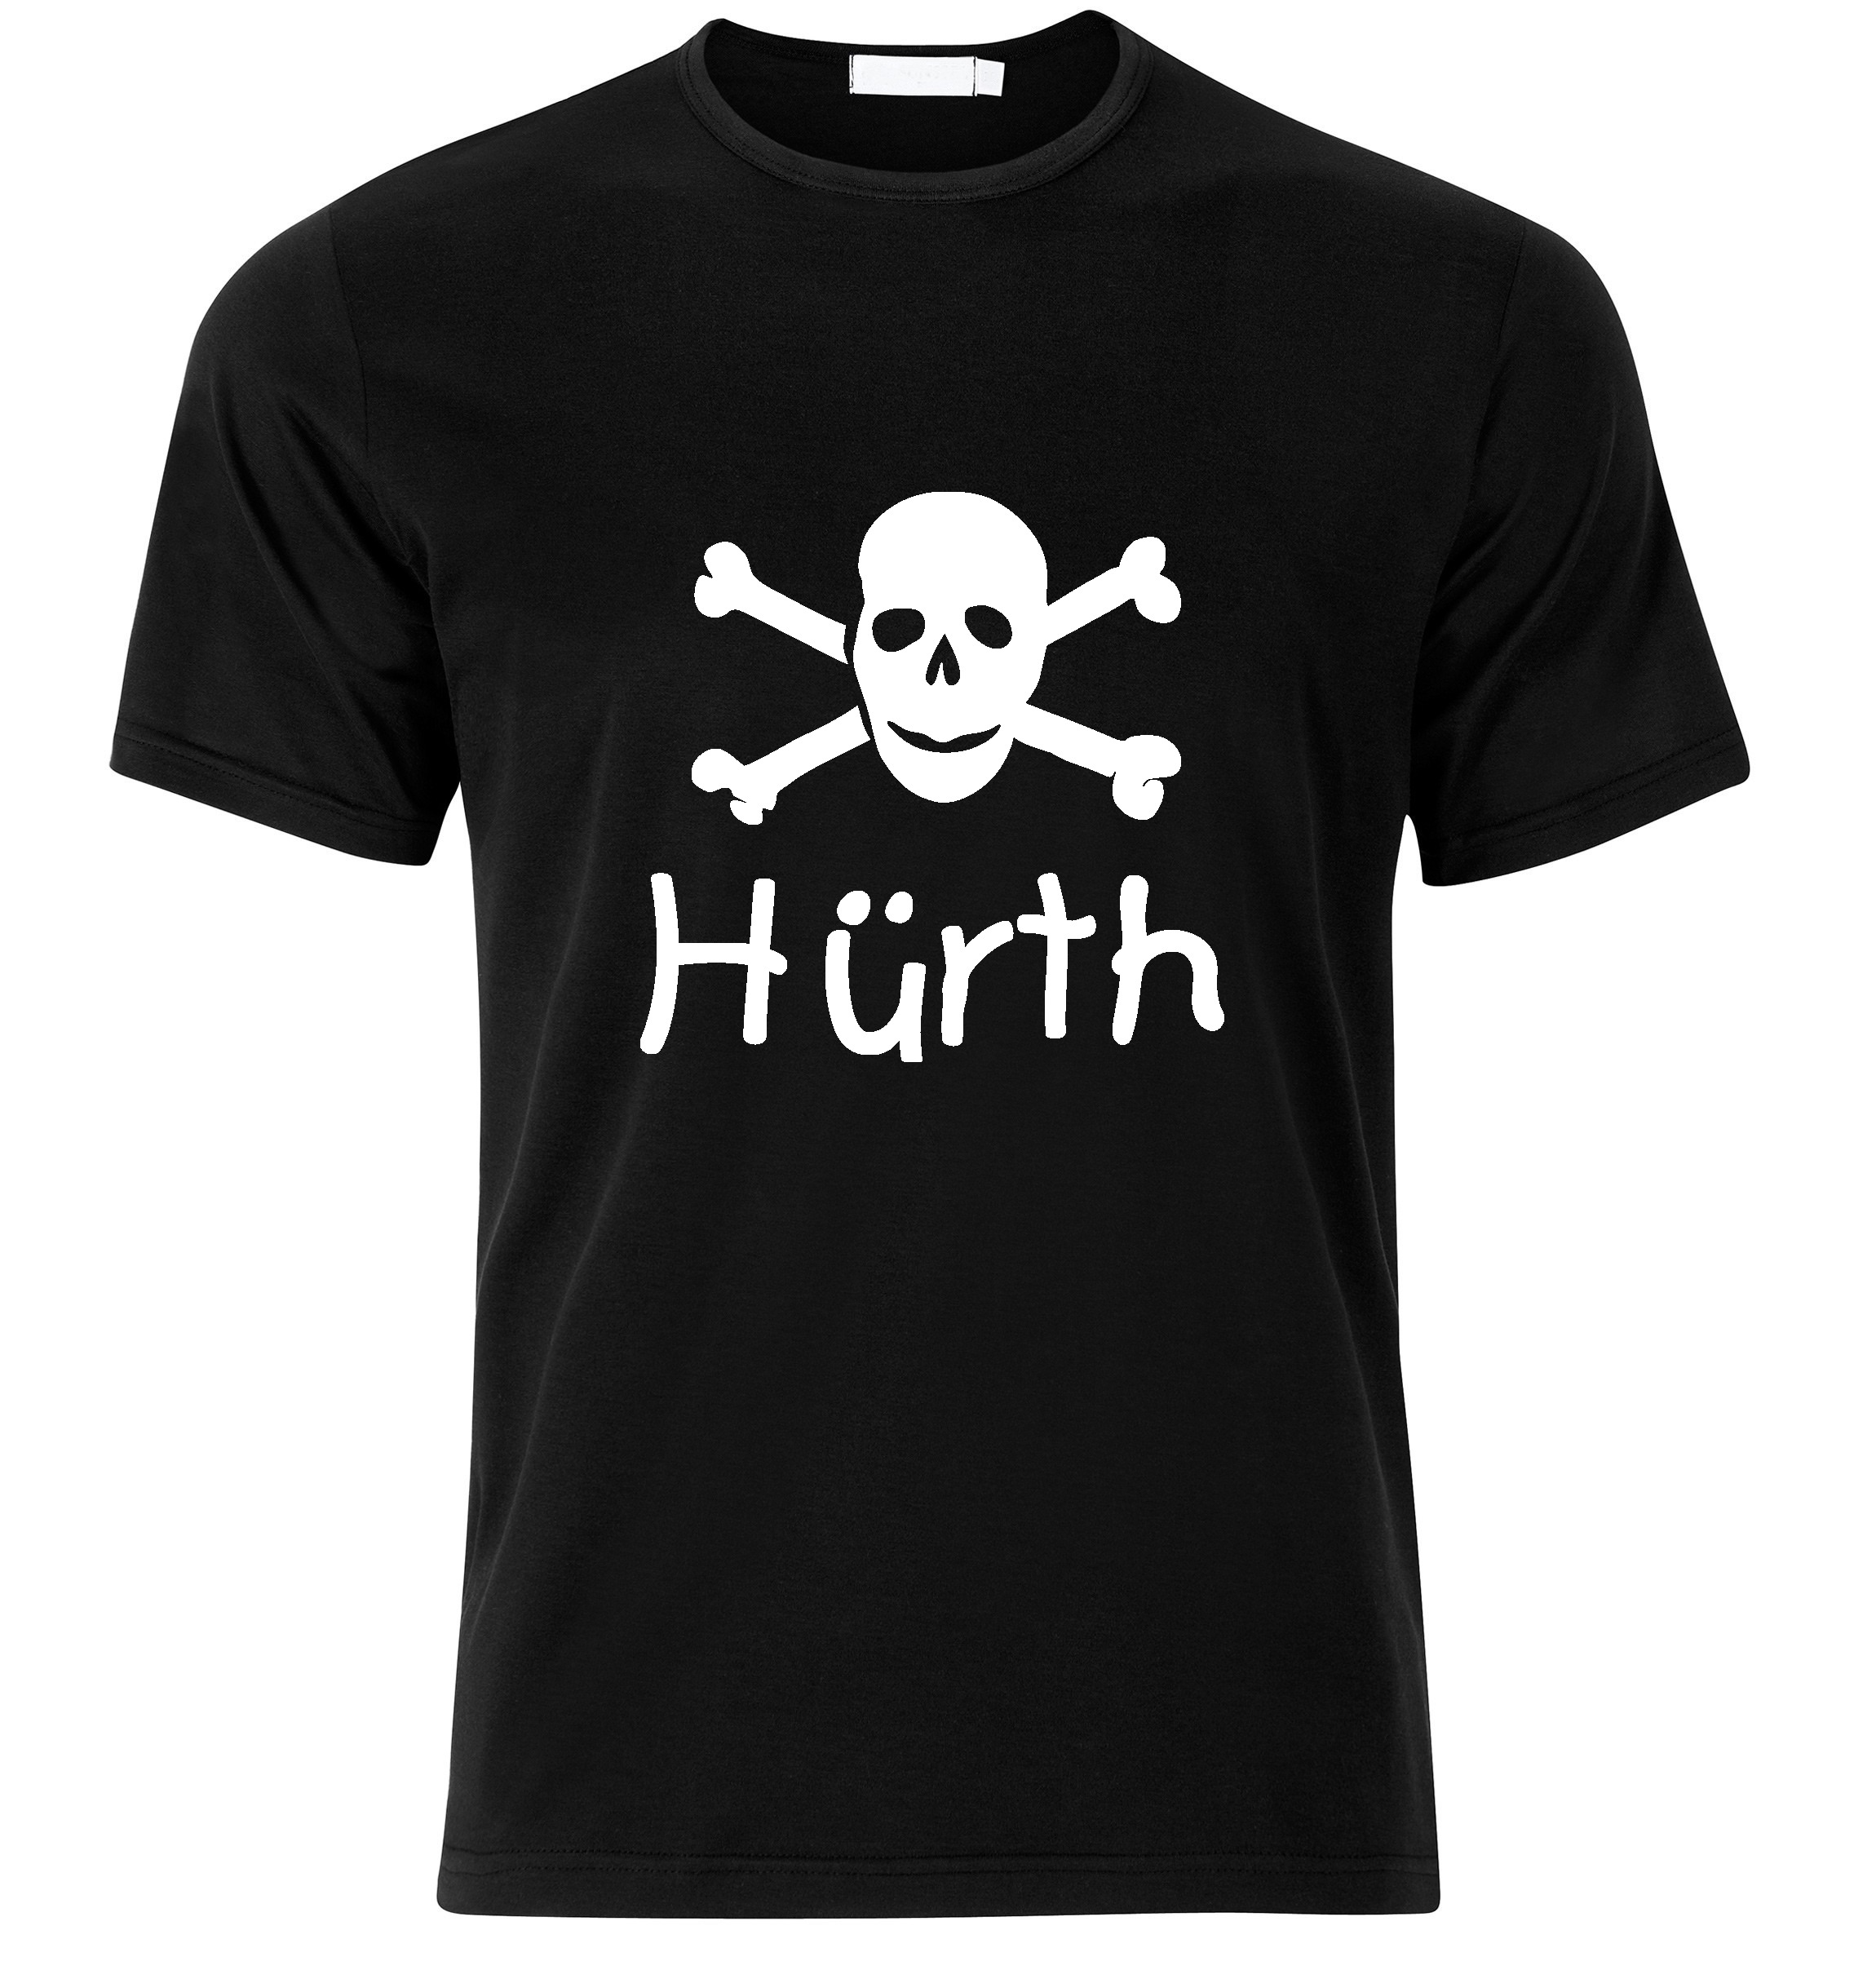 T-Shirt Hürth Jolly Roger, Totenkopf